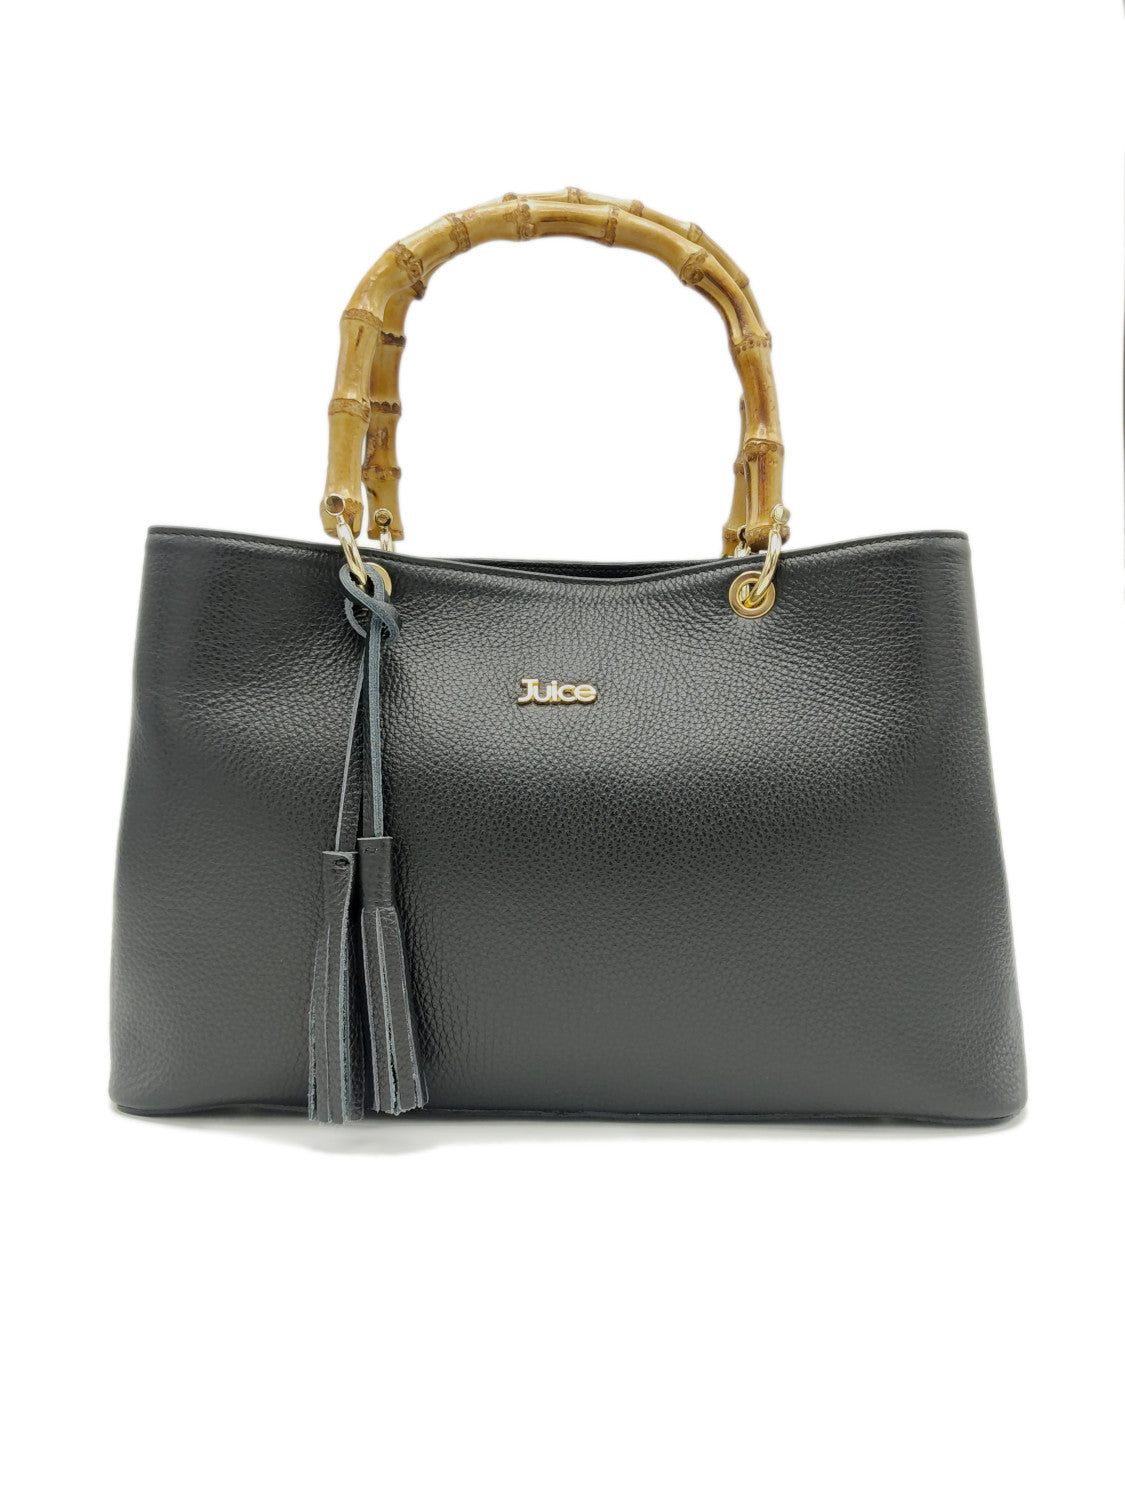 Tumbled genuine leather handbag art. 112212